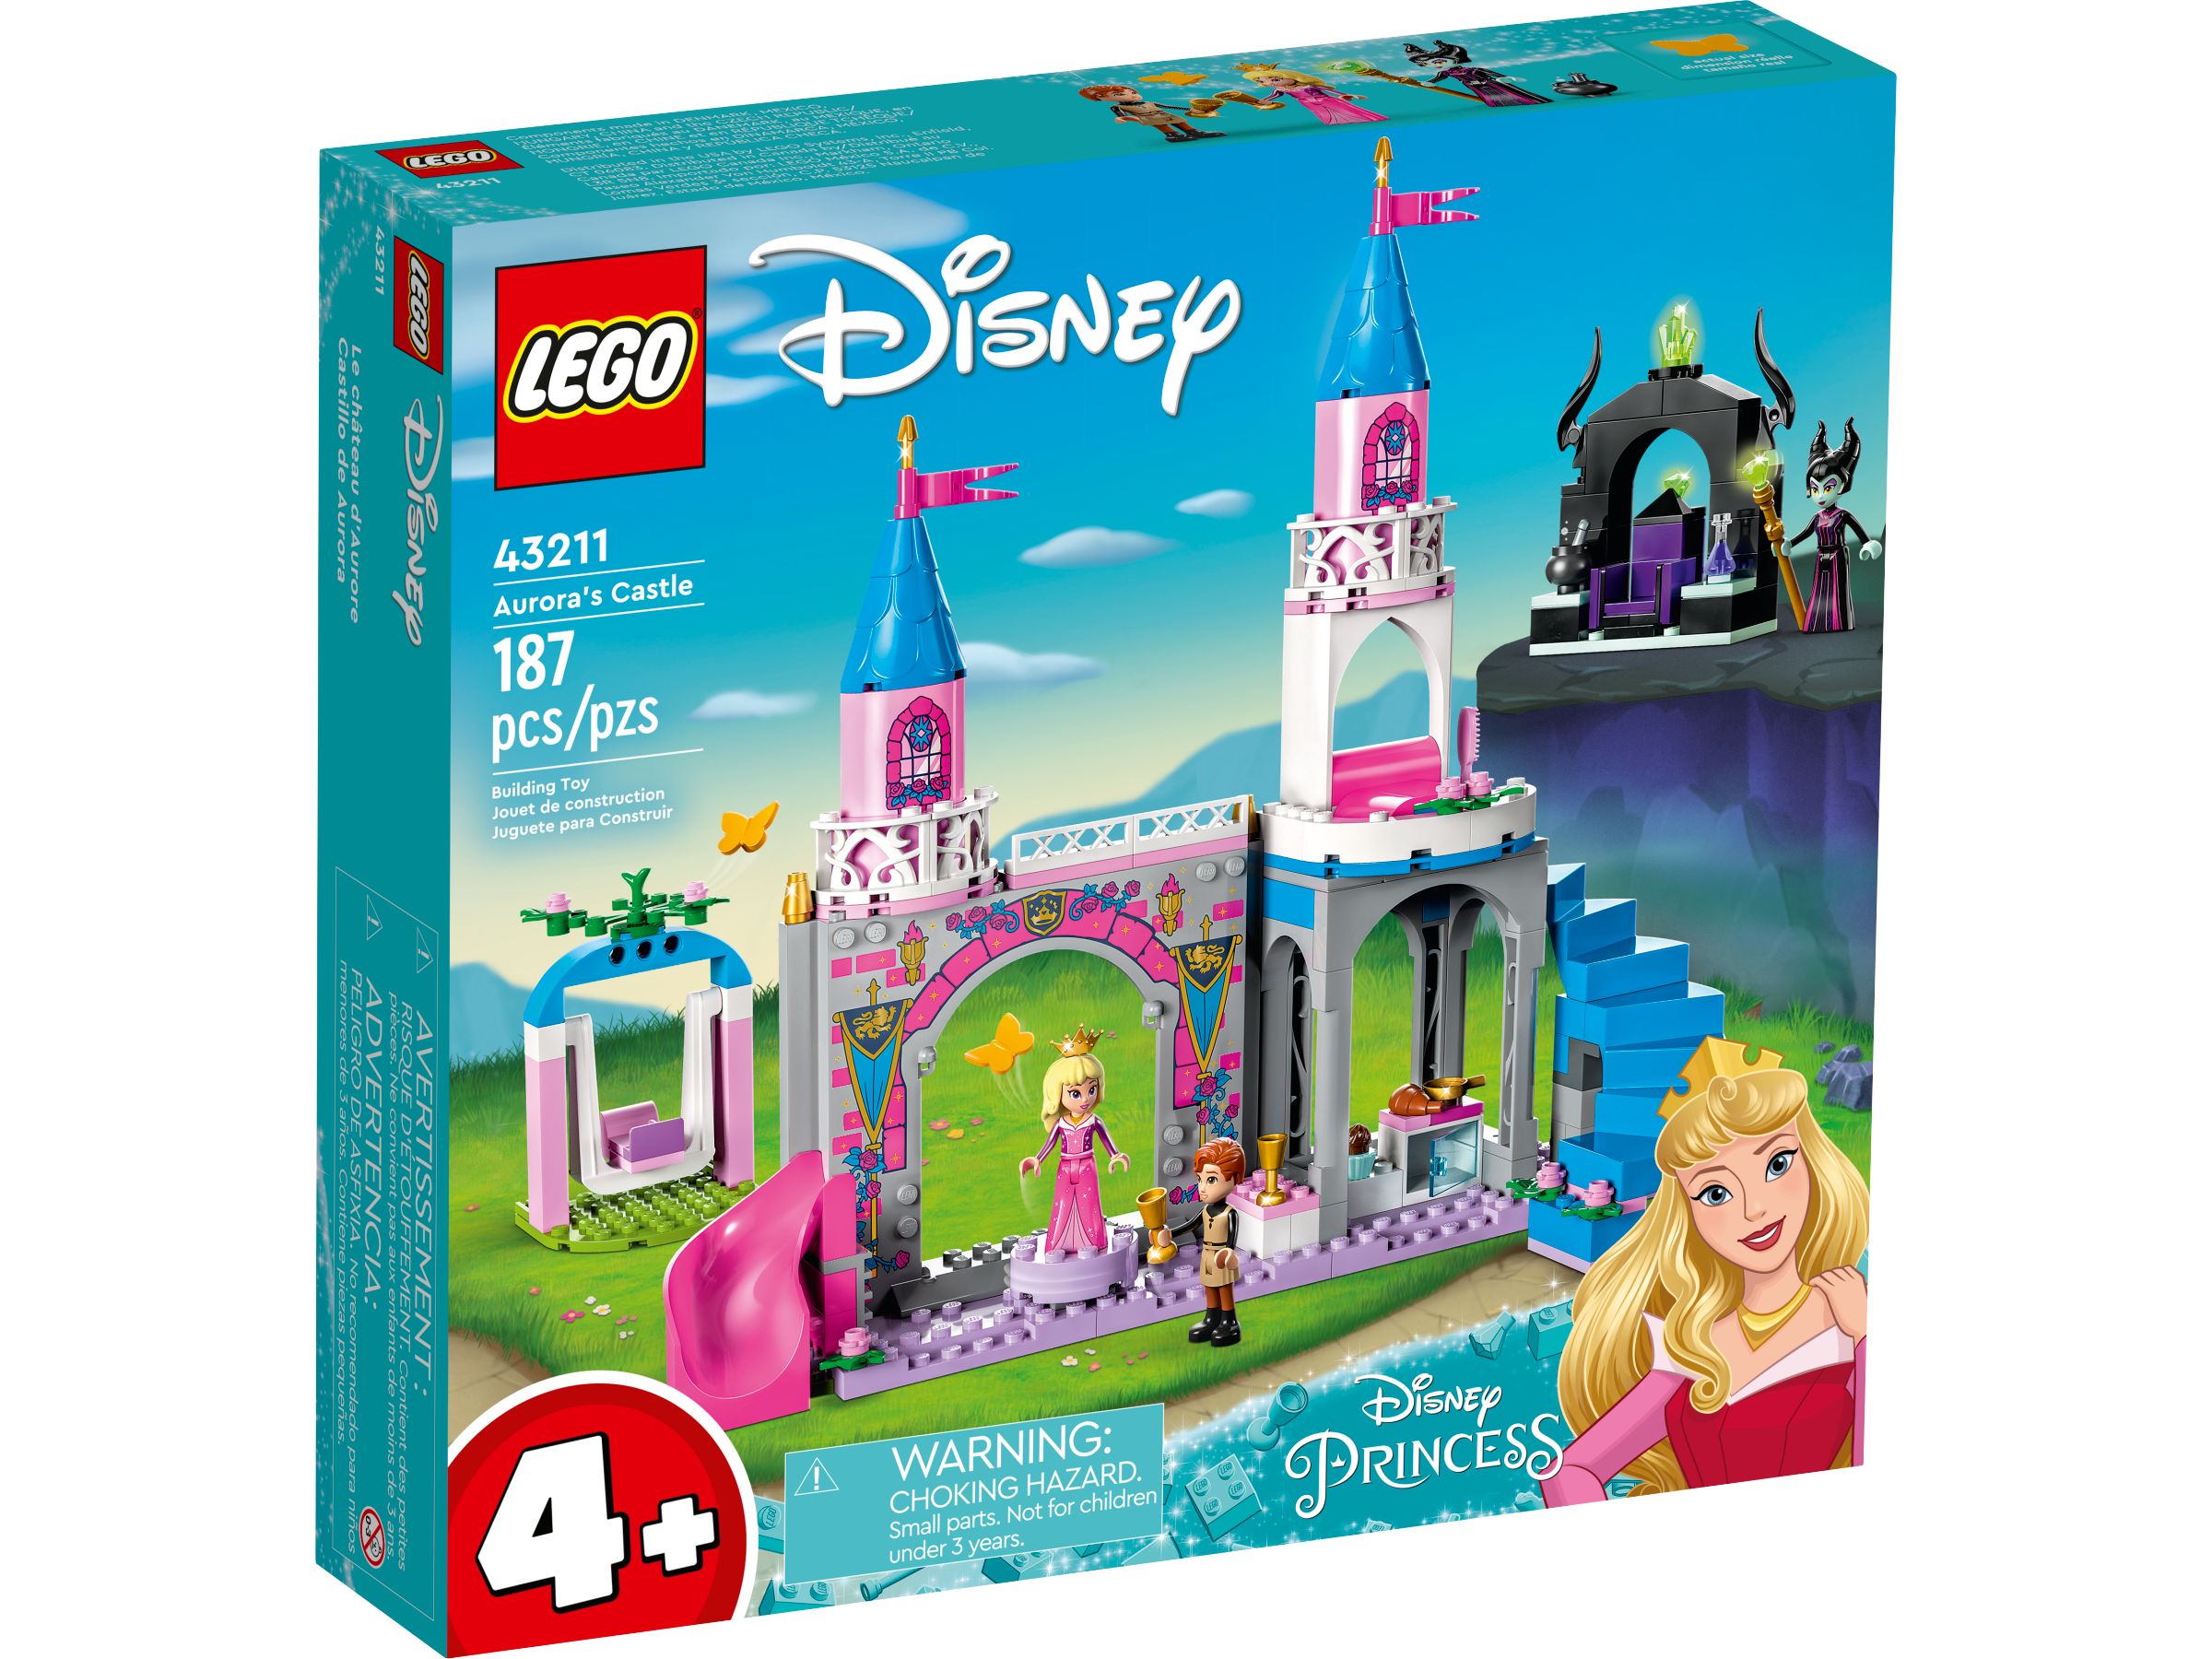 LEGO Disney 5008115 Prinzessinnen-Paket LEGO_43211_alt1.jpg